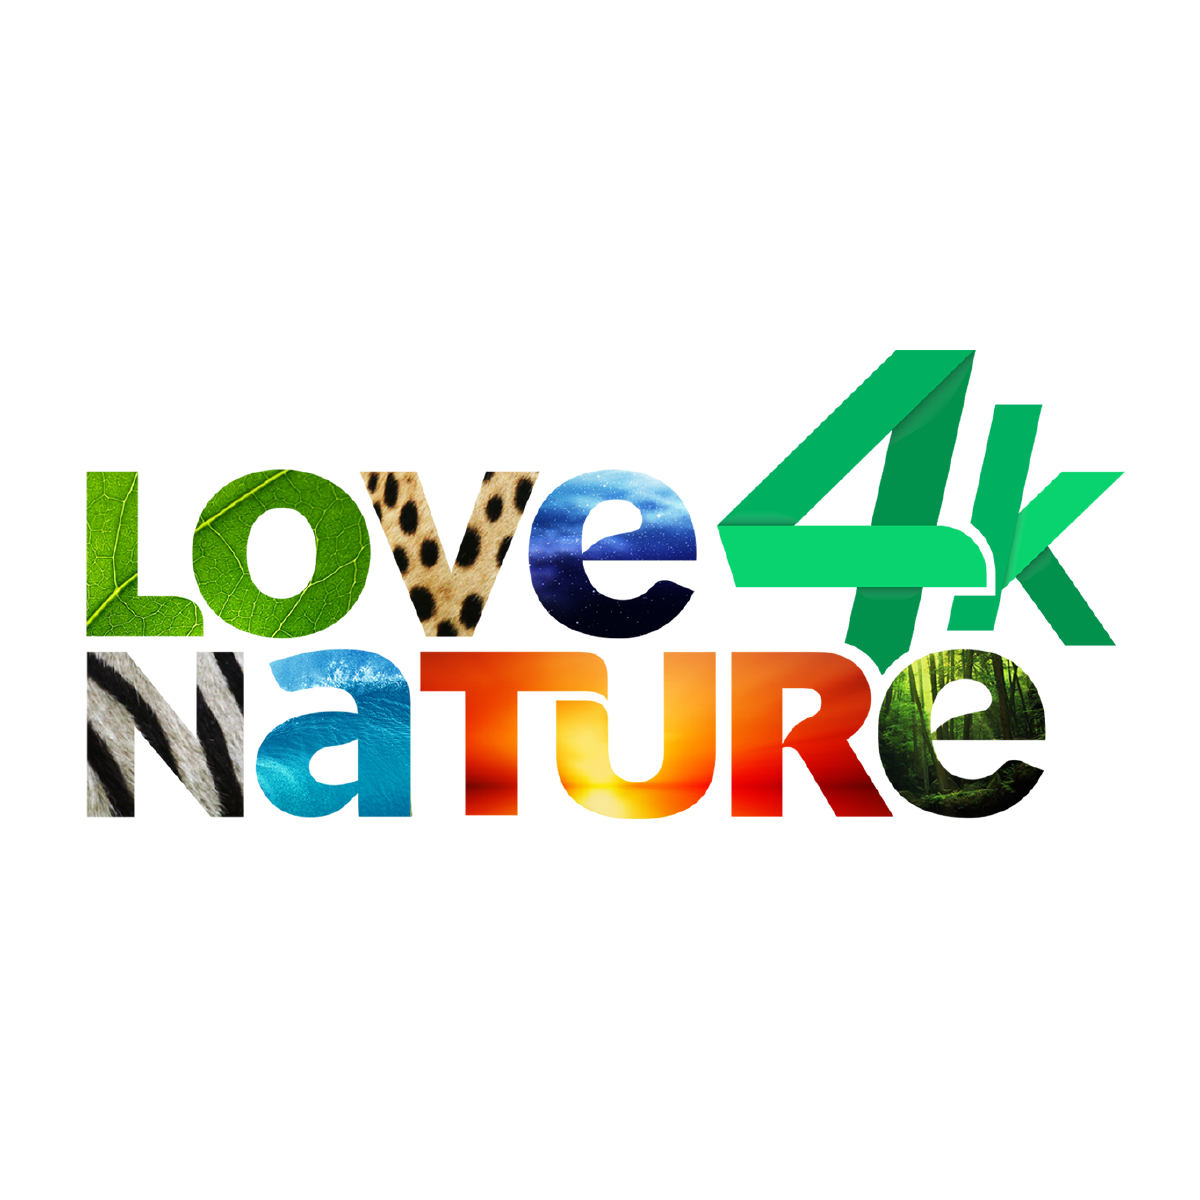 Love Nature 4K